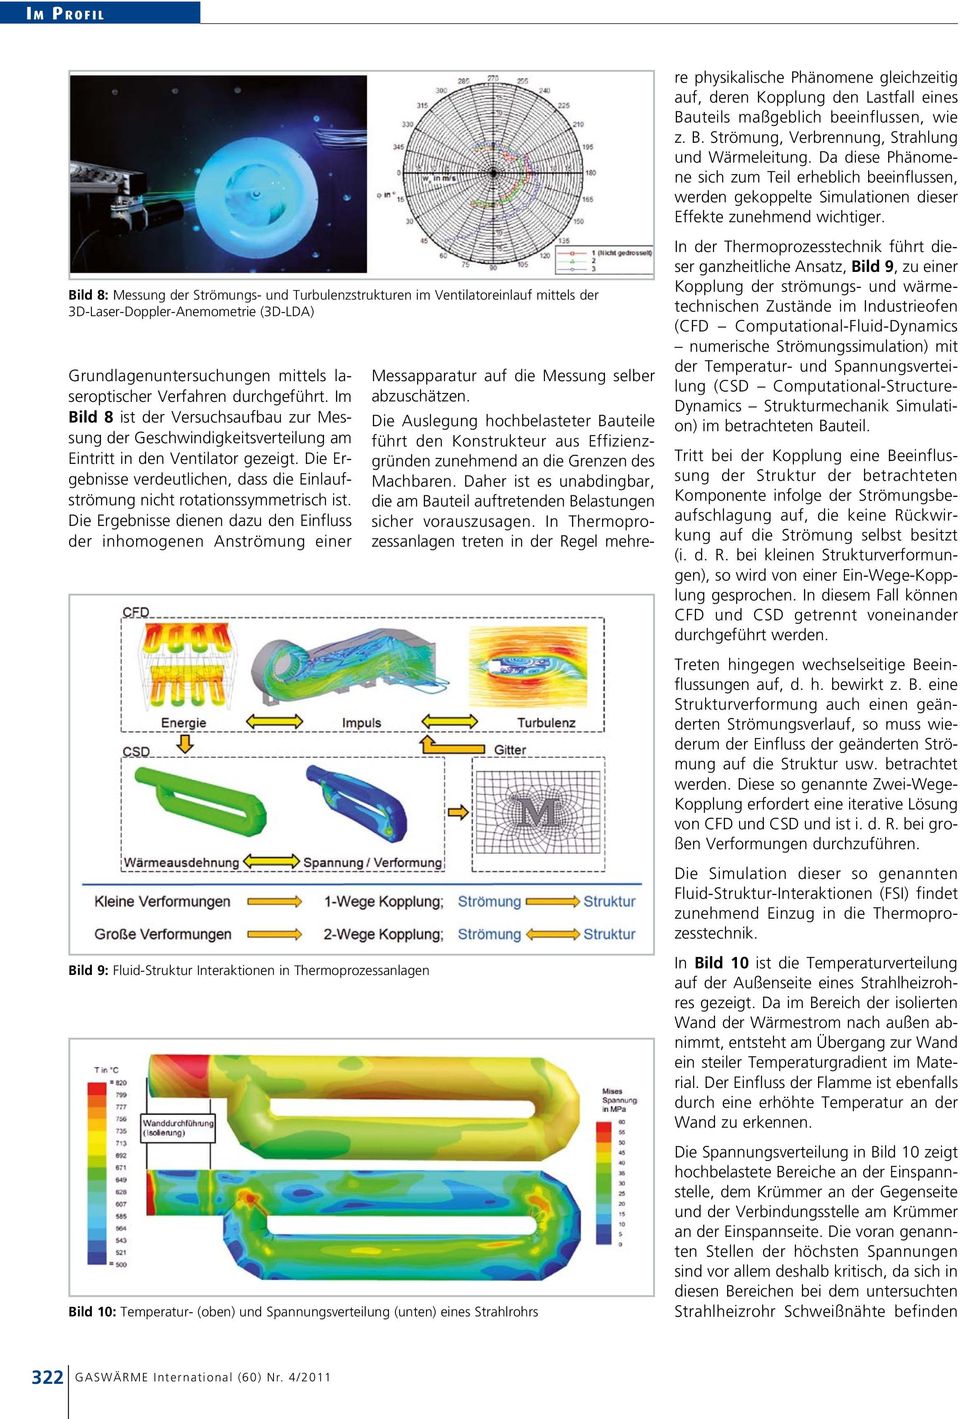 Bild 8: Messung der Strömungs- und Turbulenzstrukturen im Ventilatoreinlauf mittels der 3D-Laser-Doppler-Anemometrie (3D-LDA) Grundlagenuntersuchungen mittels laseroptischer Verfahren durchgeführt.